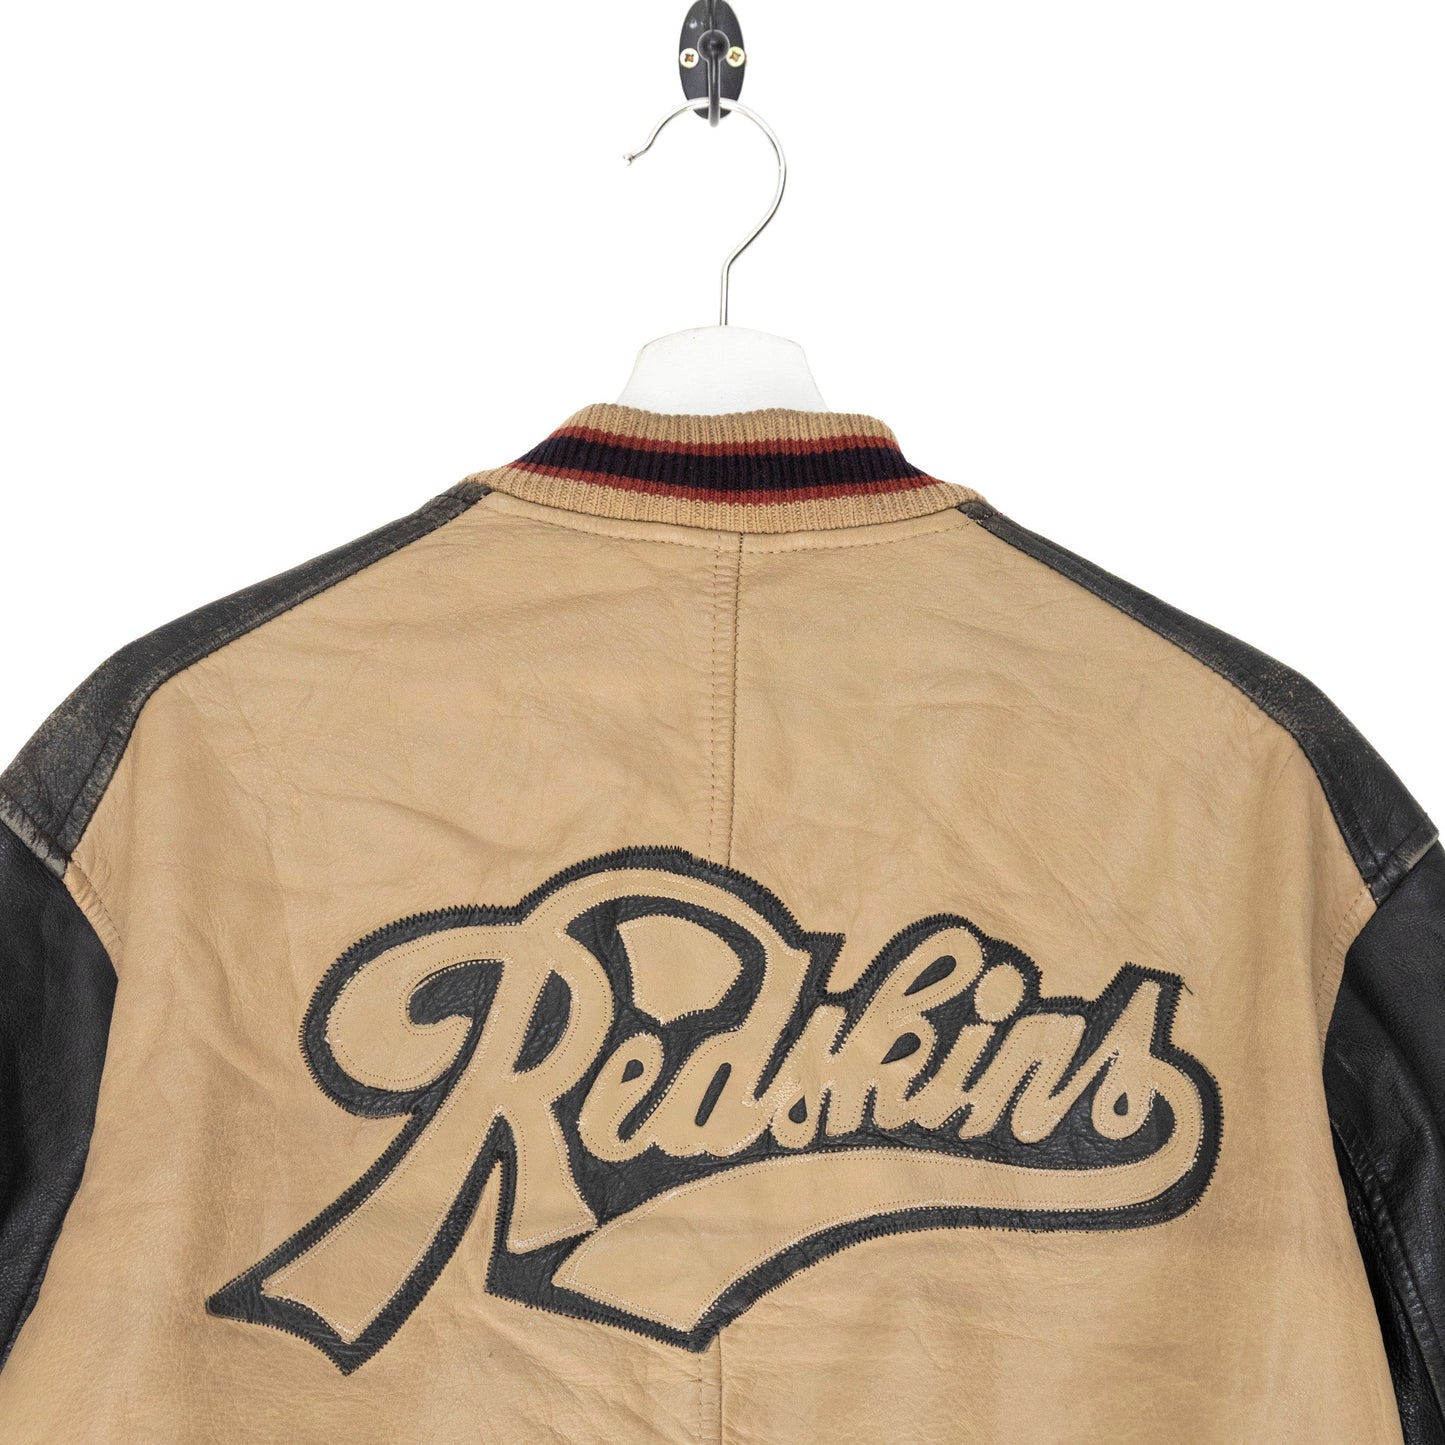 Redskins Cream Bomber Style Leather Jacket